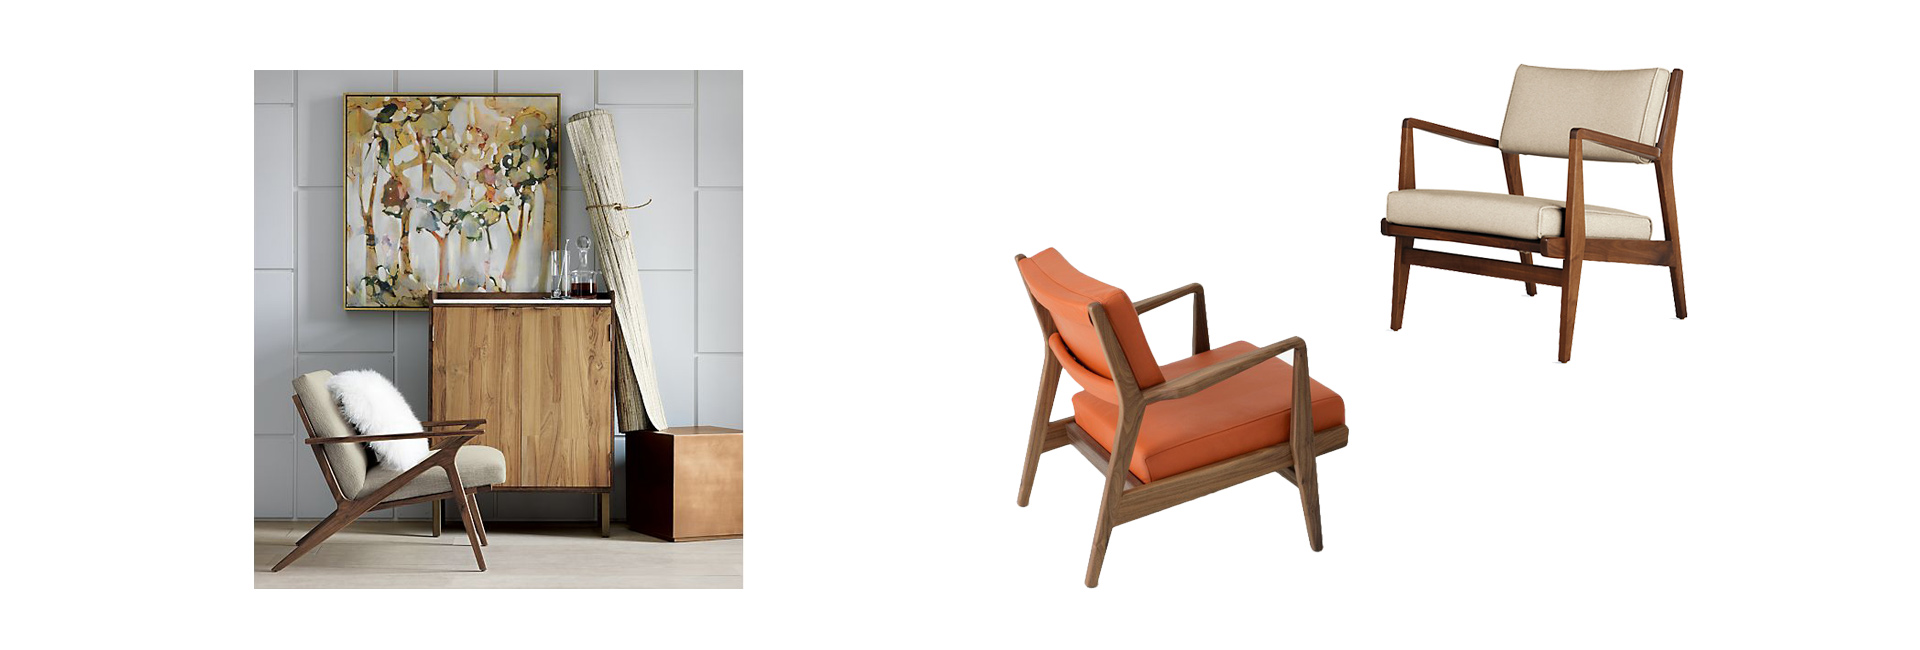 Стиль mid-century modern: бар и другая мебель как у Джеймса Бонда и Дона Дрейпера (фото 7)